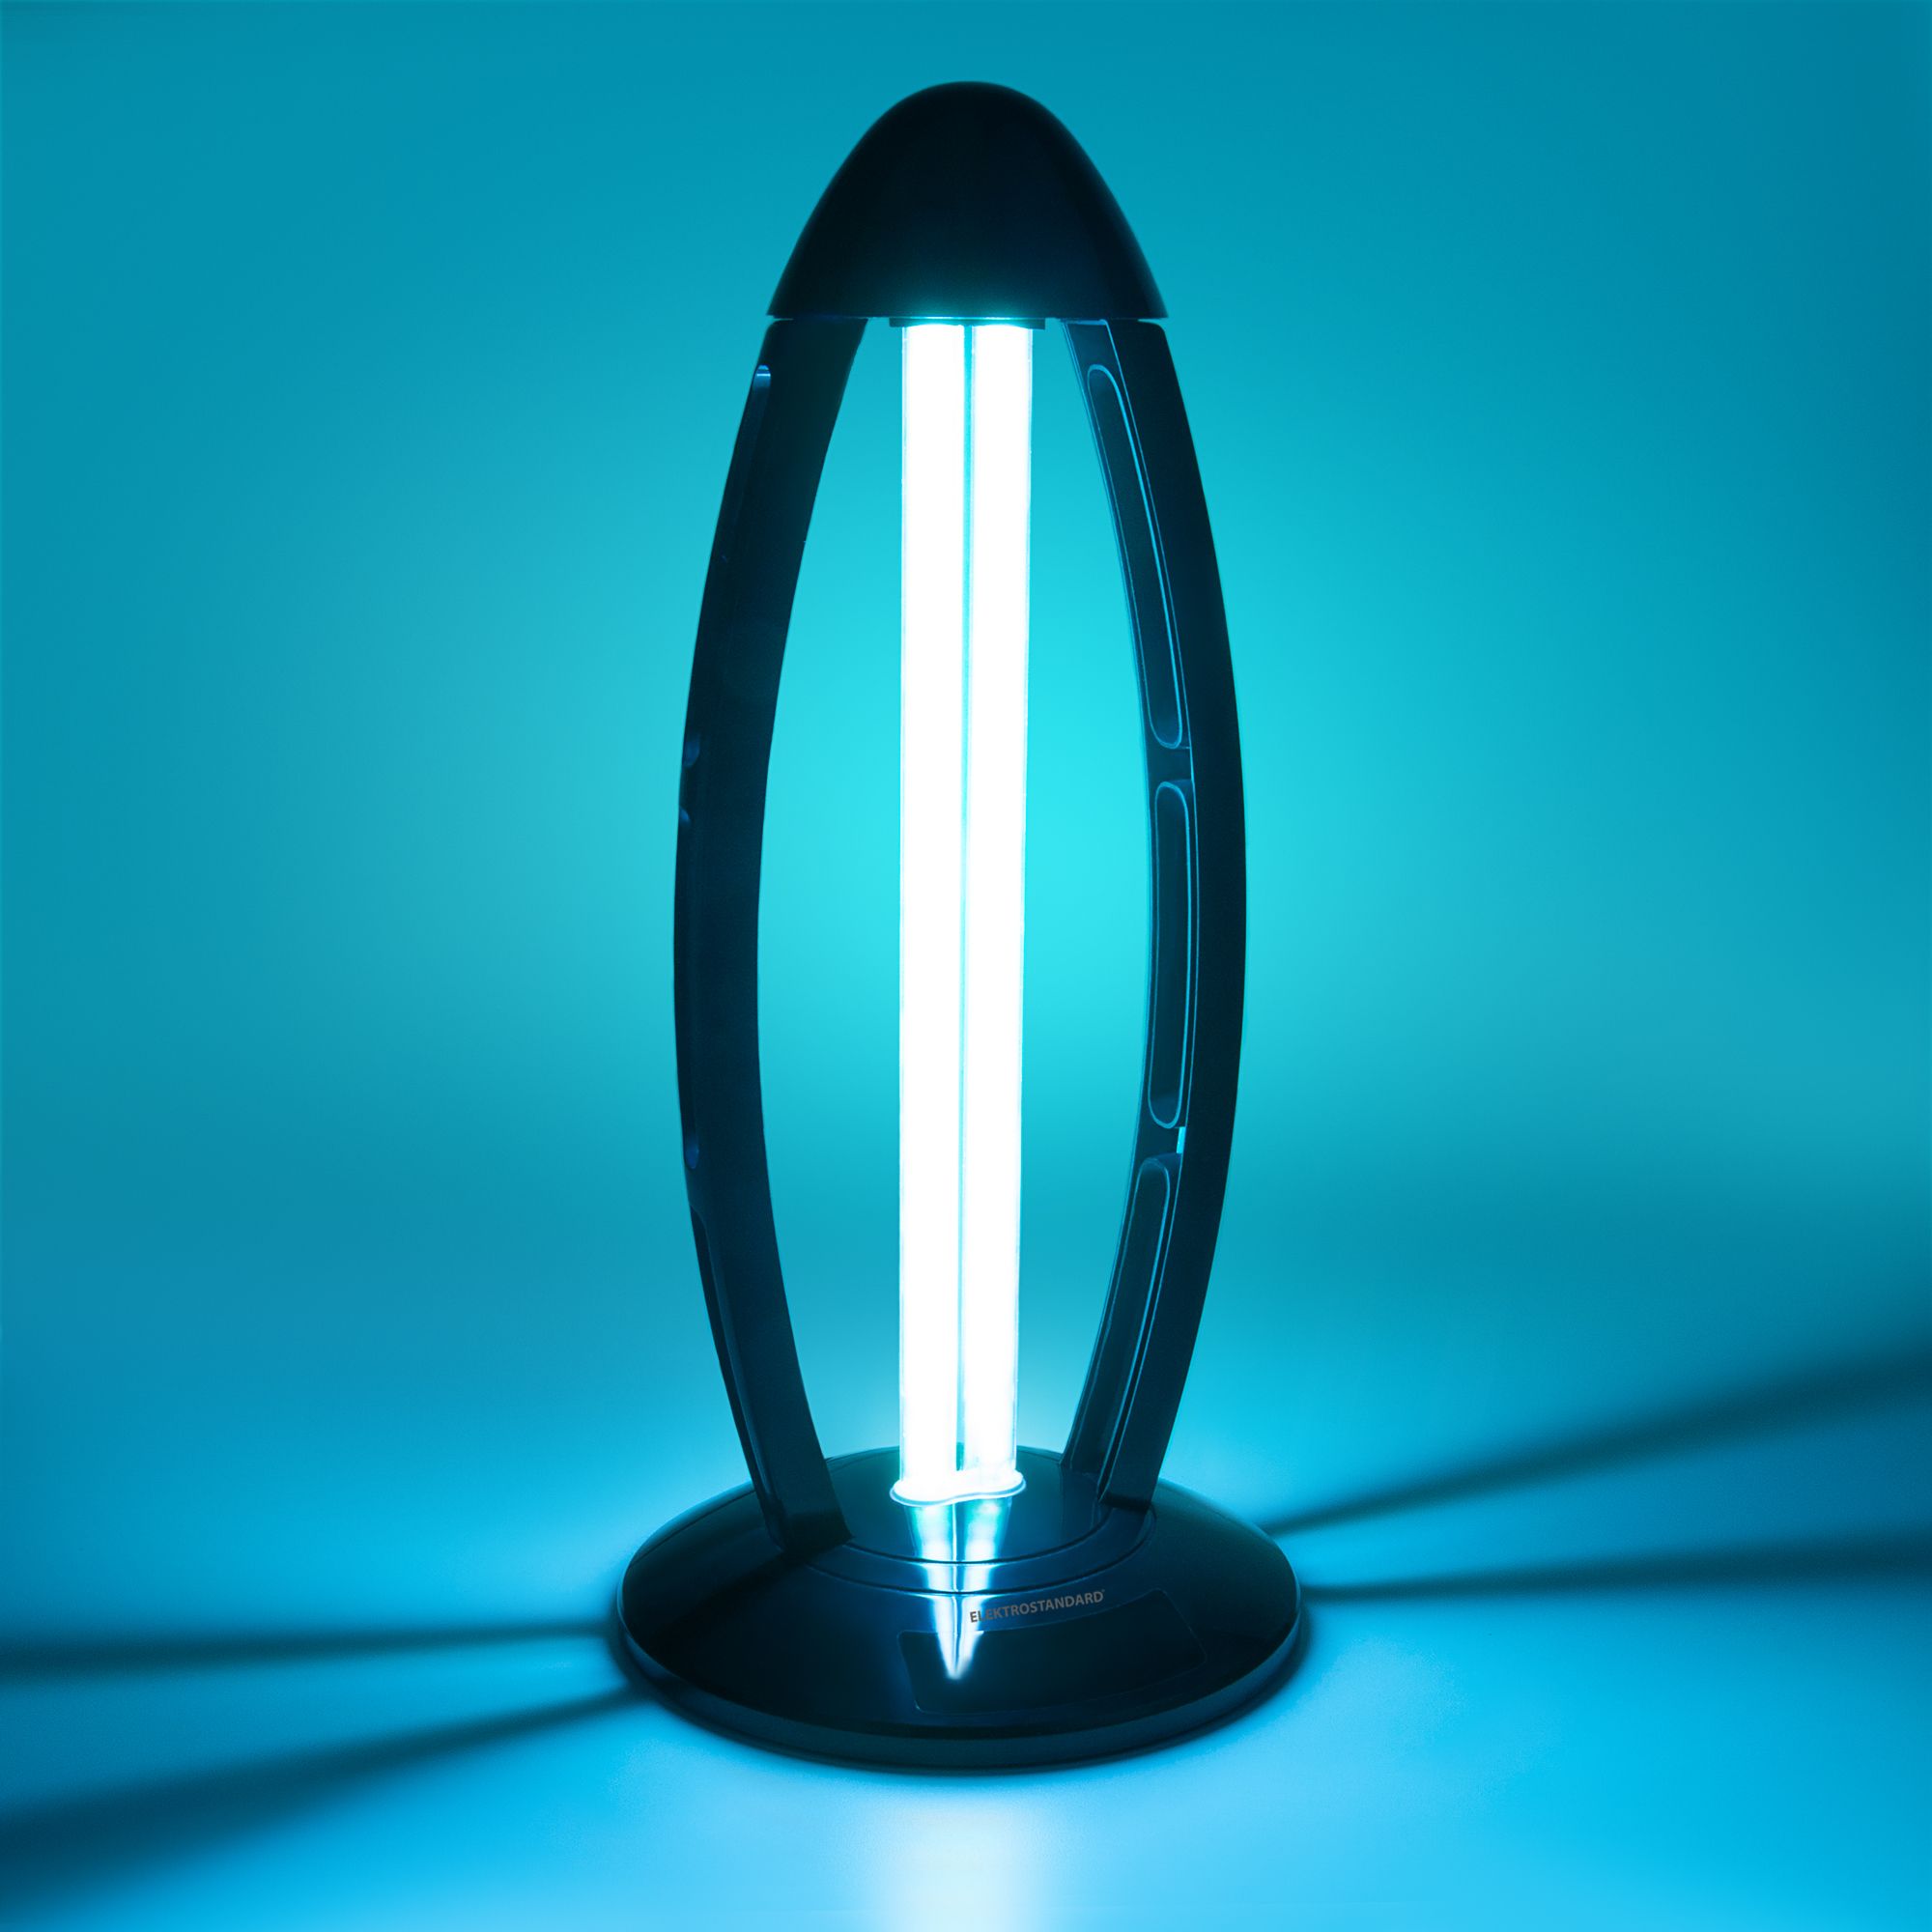 Бытовой бактерицидный ультрафиолетовый светильник UVL-001 Чёрный Elektrostandard Бактерицидные светильники UVL-001. Фото 2